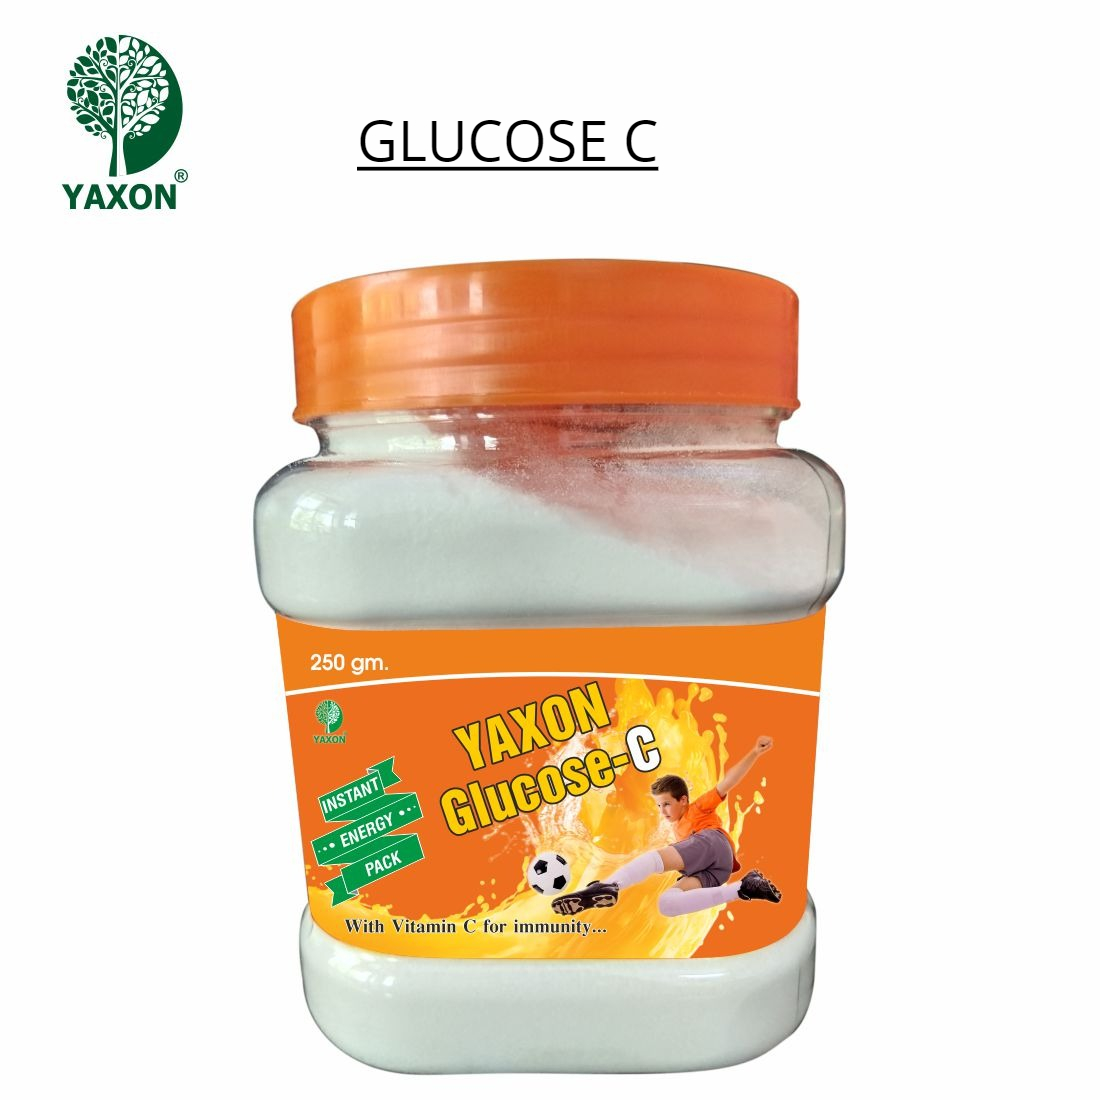 YAXON Glucose C 250gm Jar